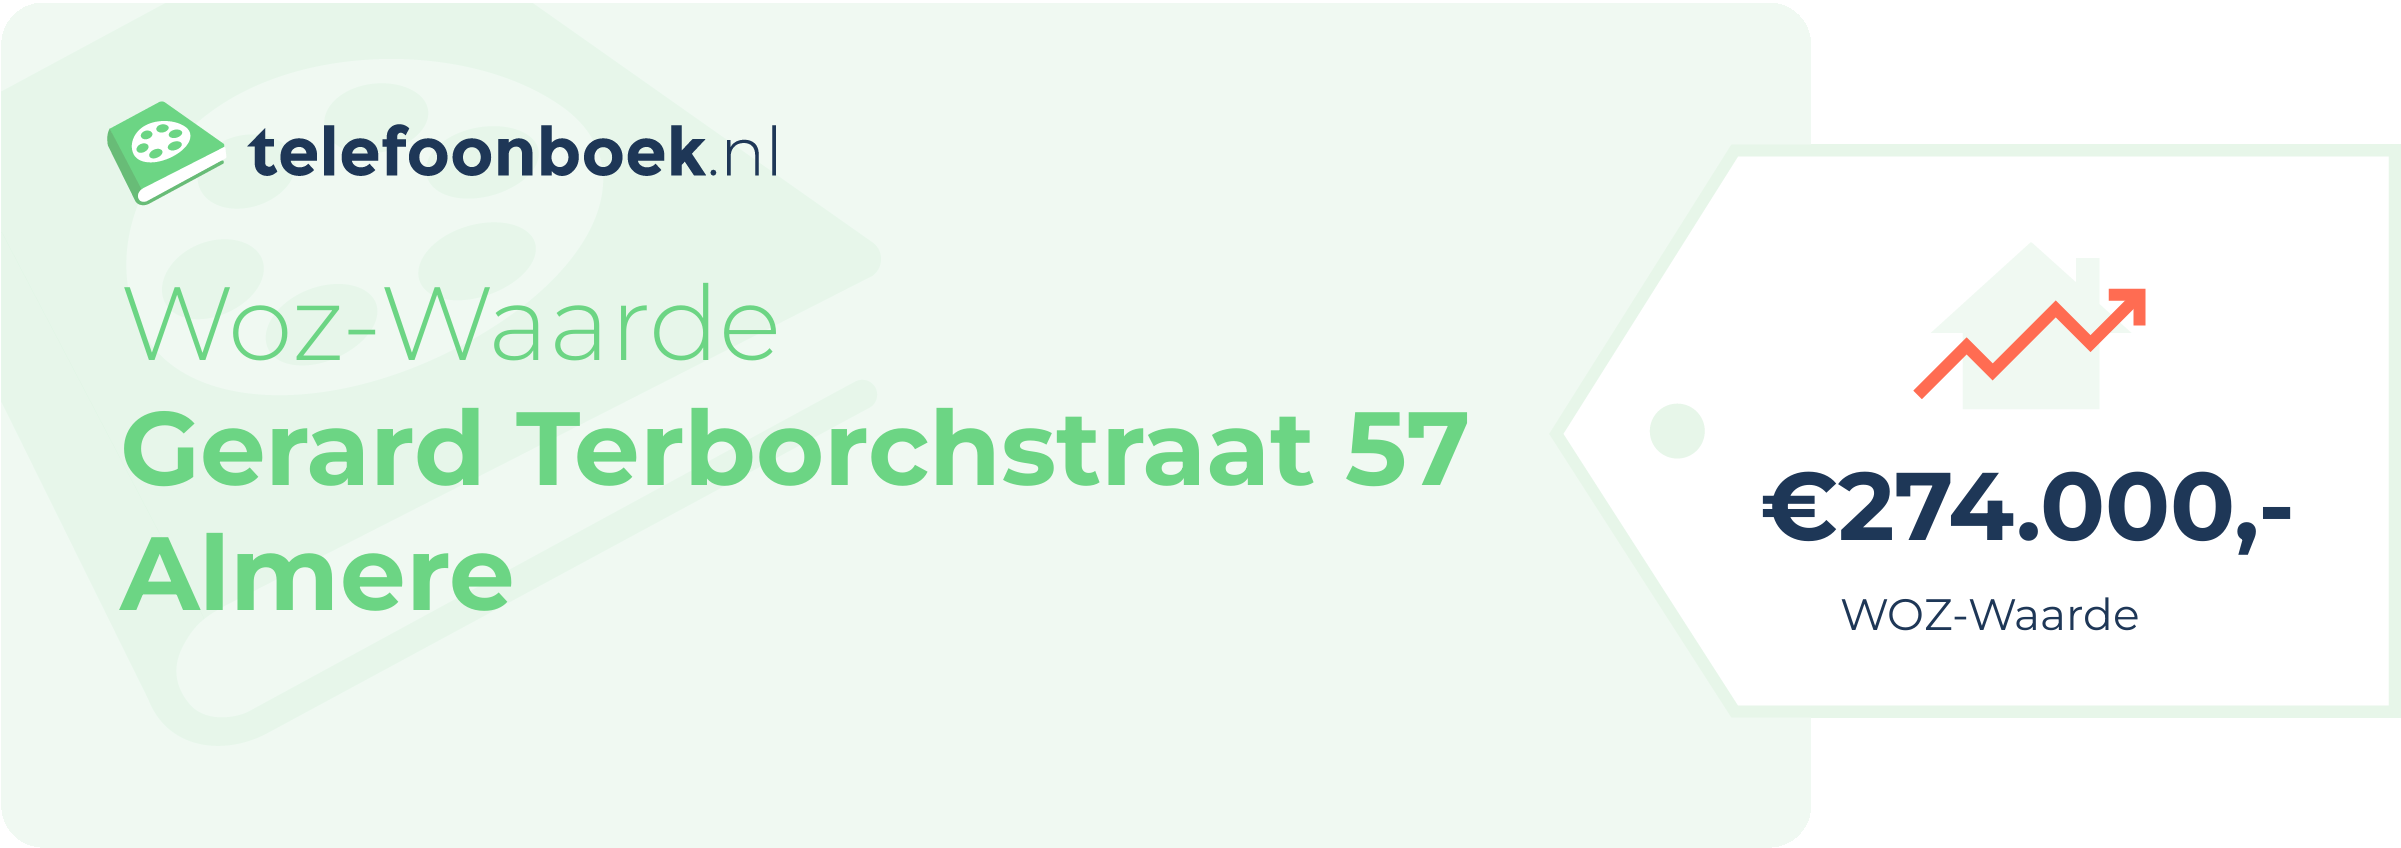 WOZ-waarde Gerard Terborchstraat 57 Almere